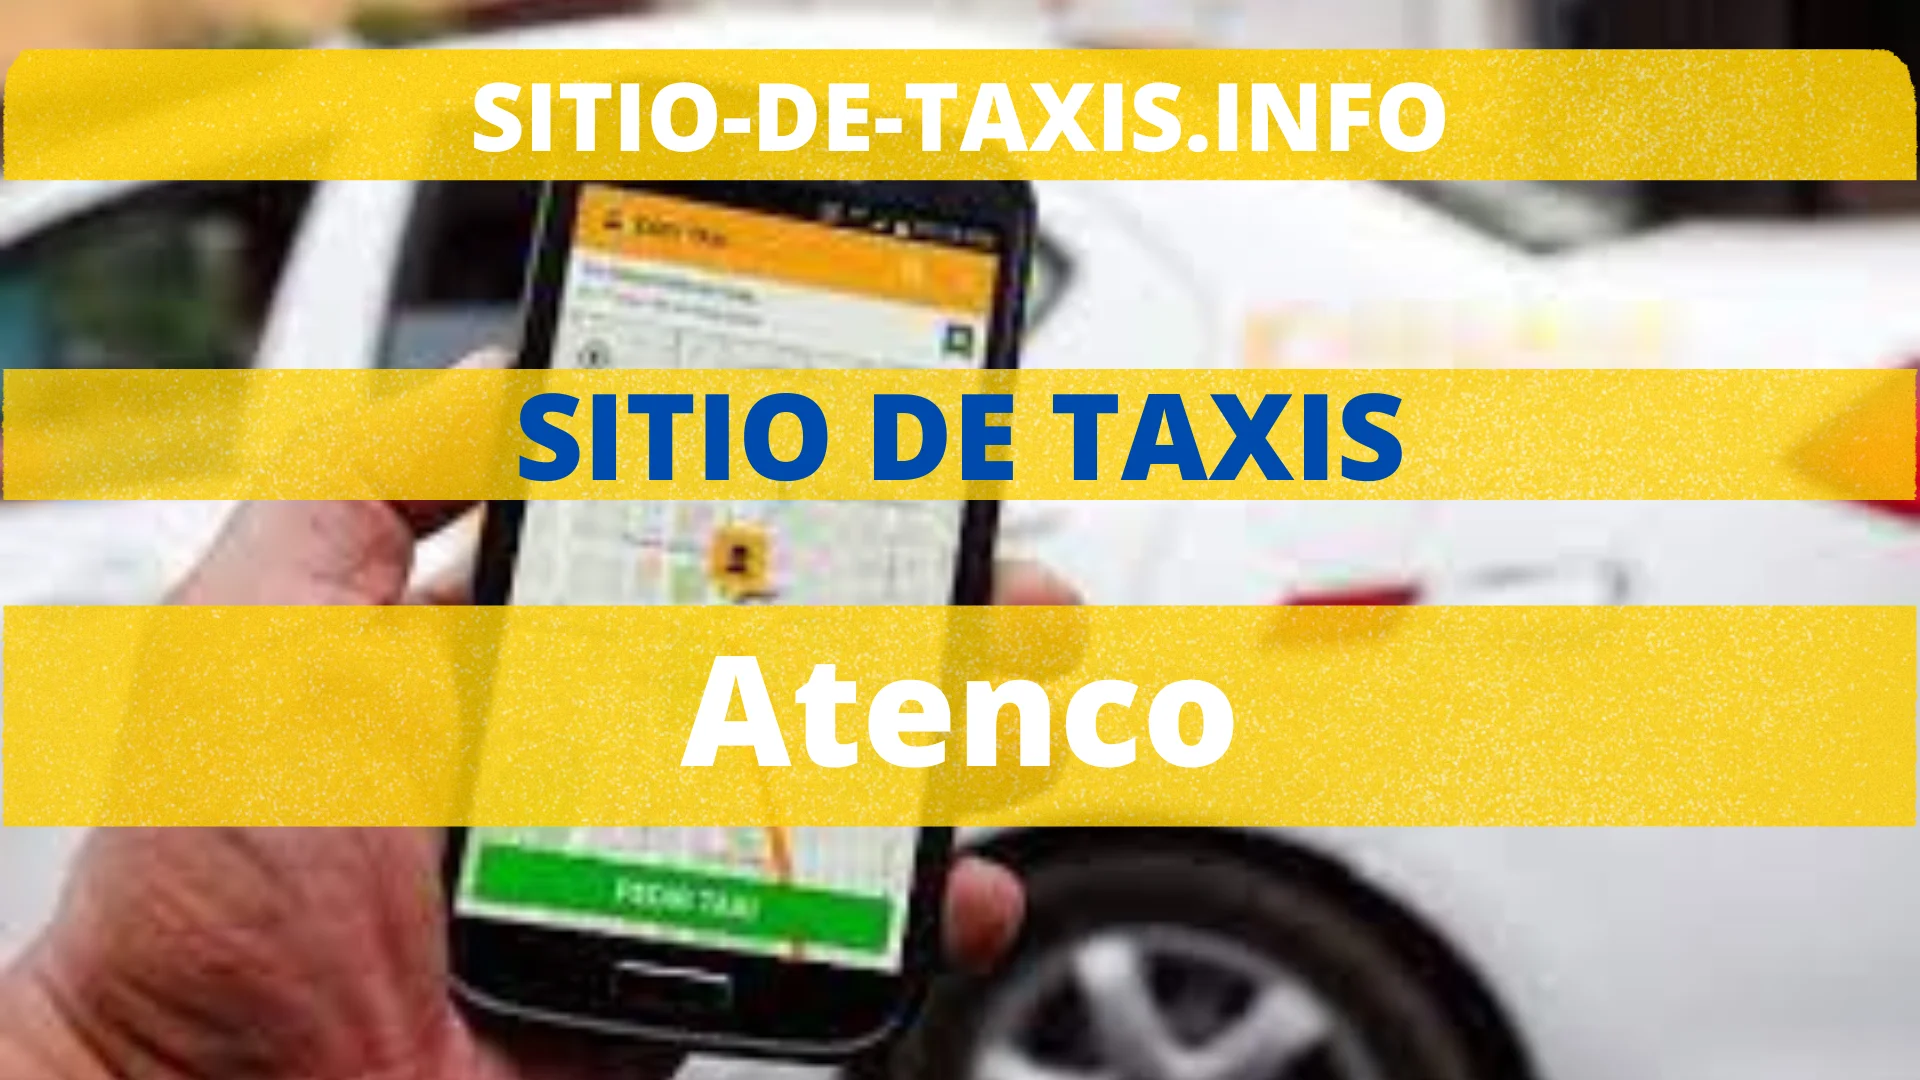 Sitio de Taxis Atenco